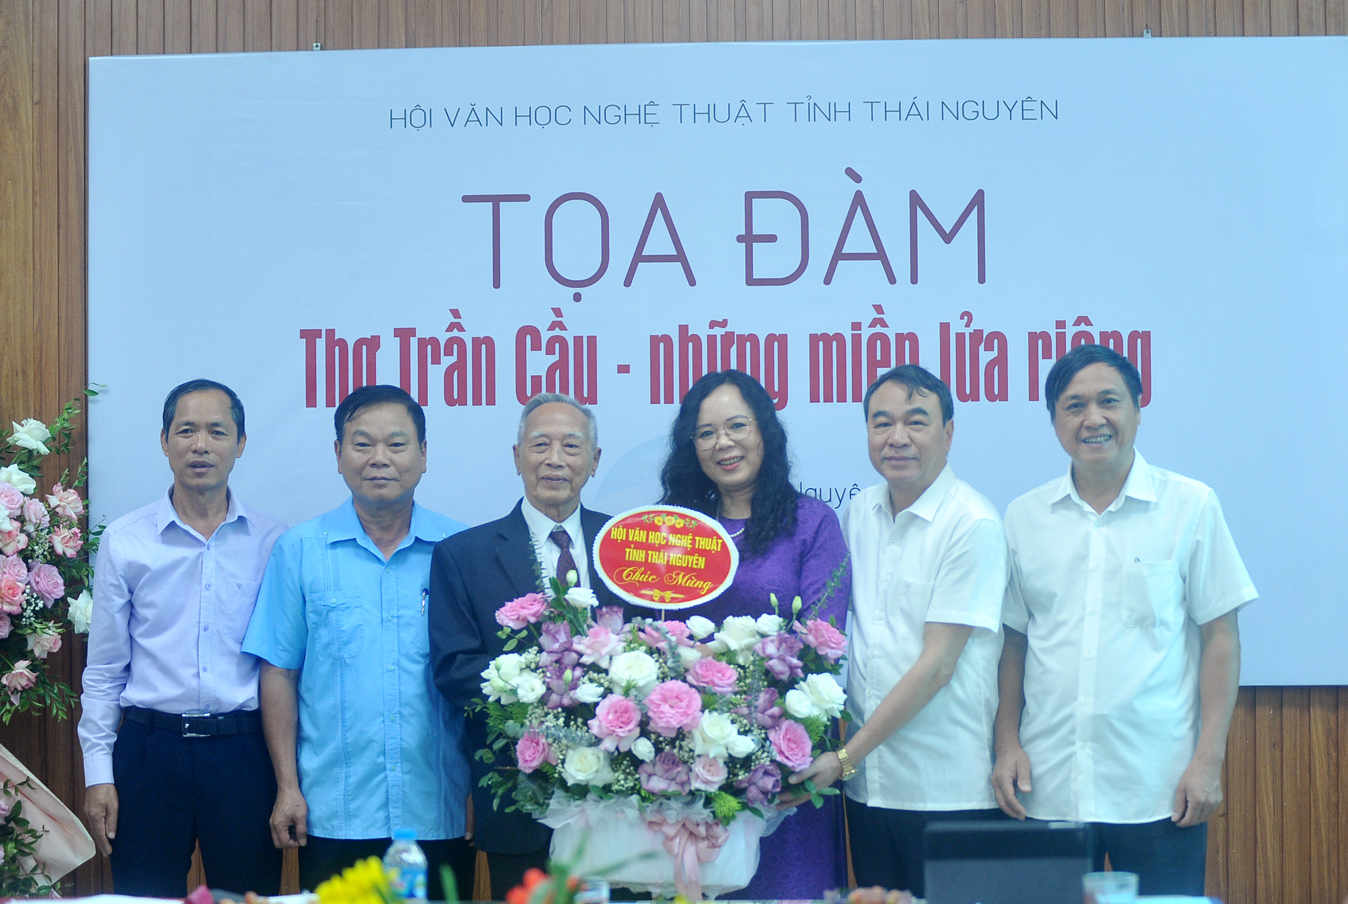 Lãnh đạo Hội Văn học Nghệ thuật tỉnh tặng hoa chúc mừng Nhà thơ Trần Cầu (thứ 3 từ trái sang)